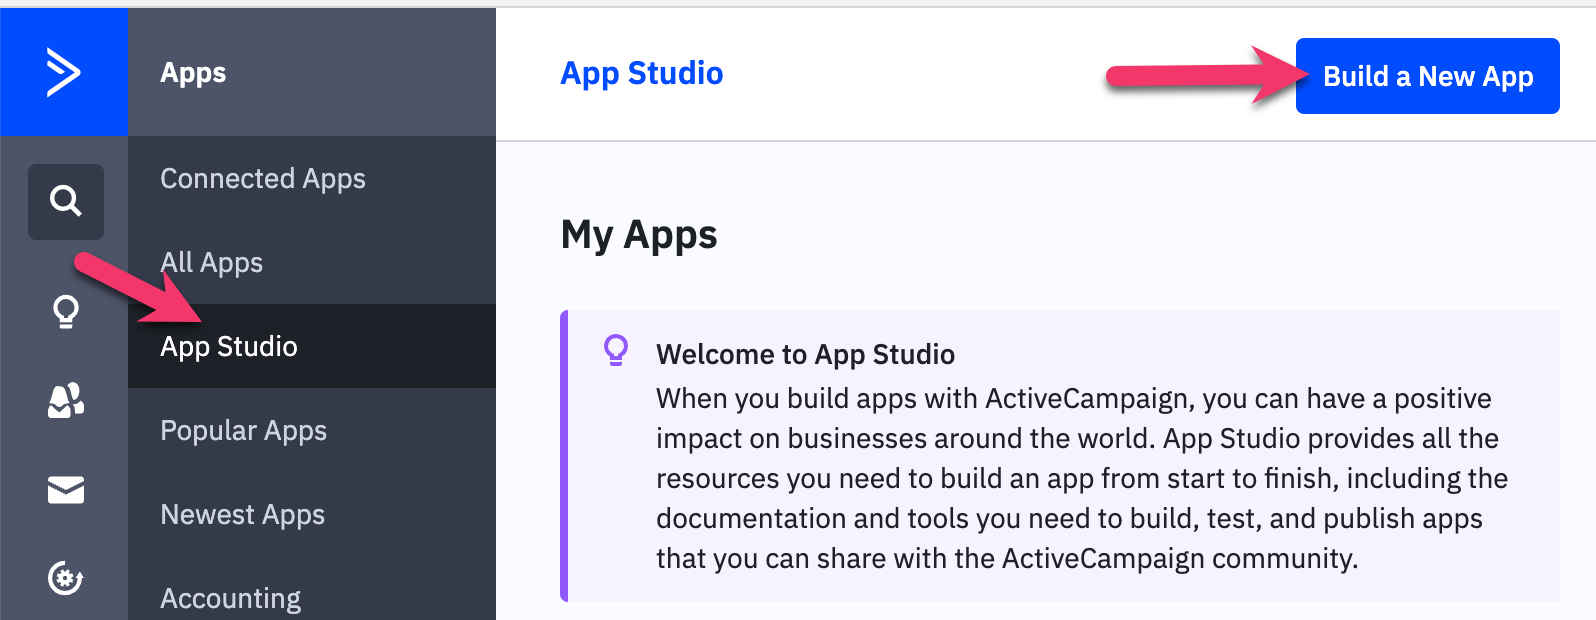 App Studio, Build a New App